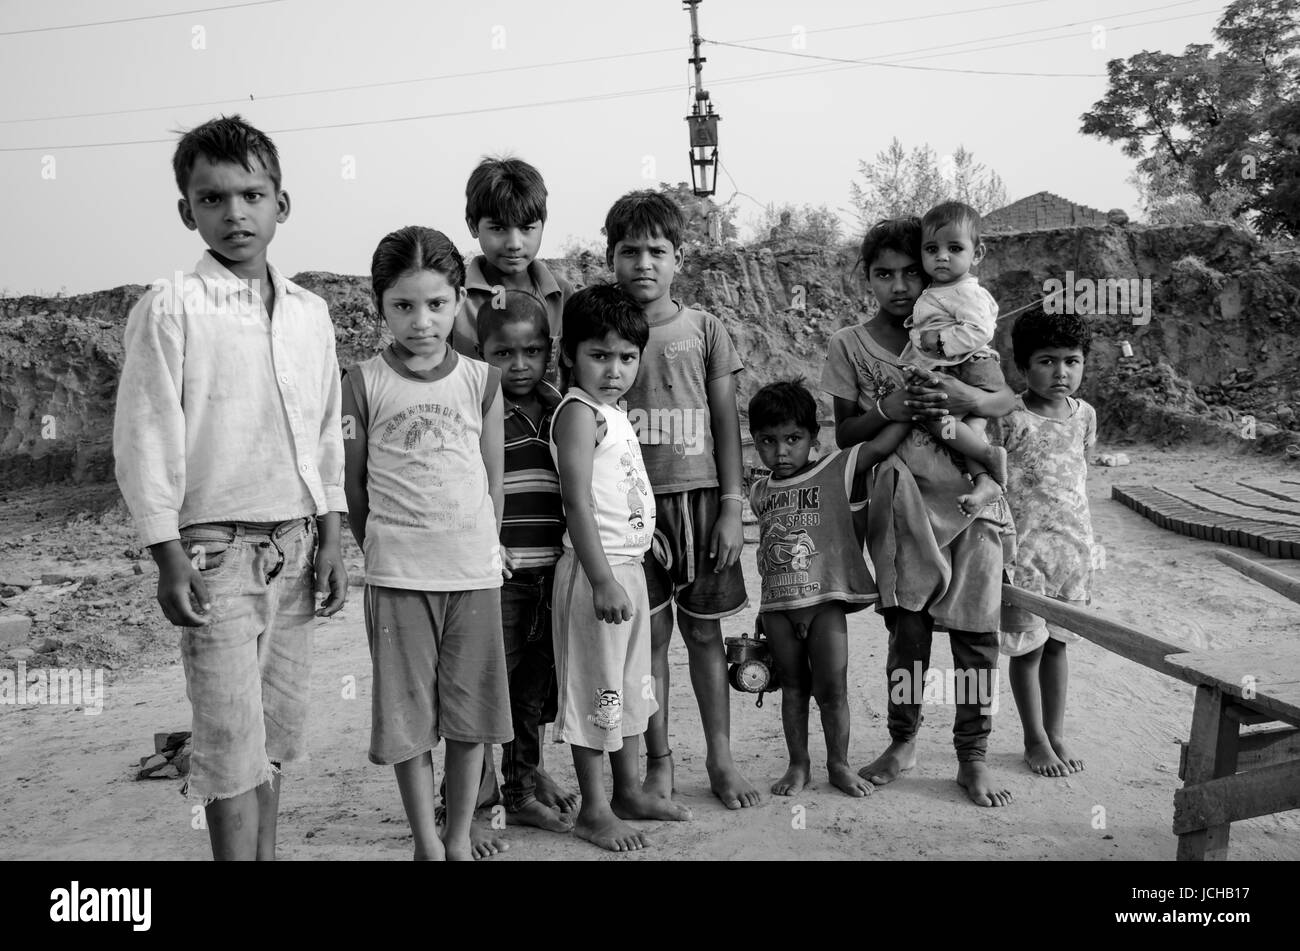 Amritsar, Punjab, india - 21 avril 2017 : photo monochrome d'enfants indiens tenant leurs jeunes frères et sœurs Banque D'Images